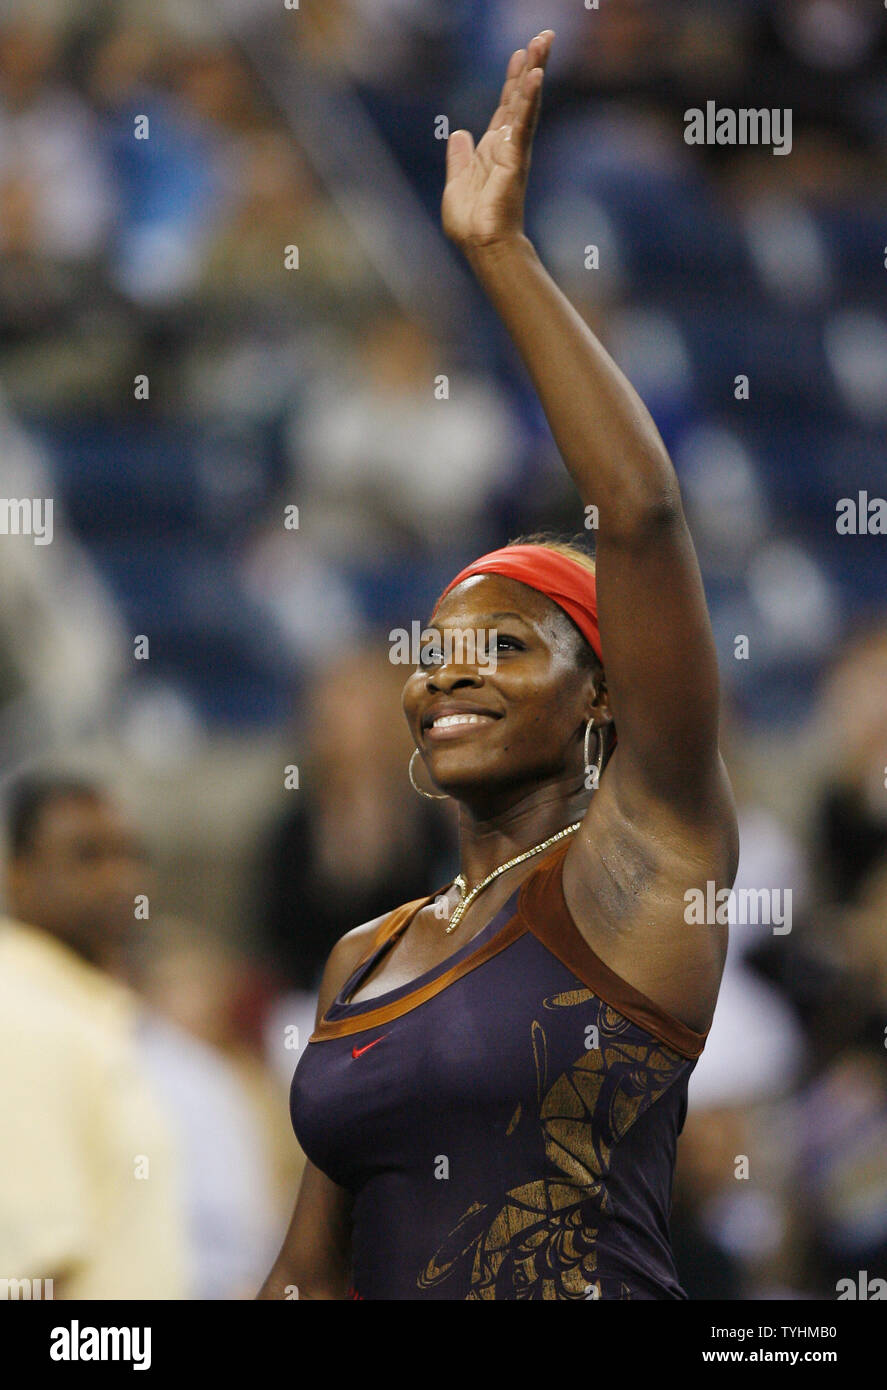 Serena Williams Wellen zu ihren Fans nach Ihrem geraden Sätzen Niederlage von Ana Ivanovic am US Open in Flushing Meadows, New York am 3. September 2006. (UPI Foto/John angelillo) Stockfoto